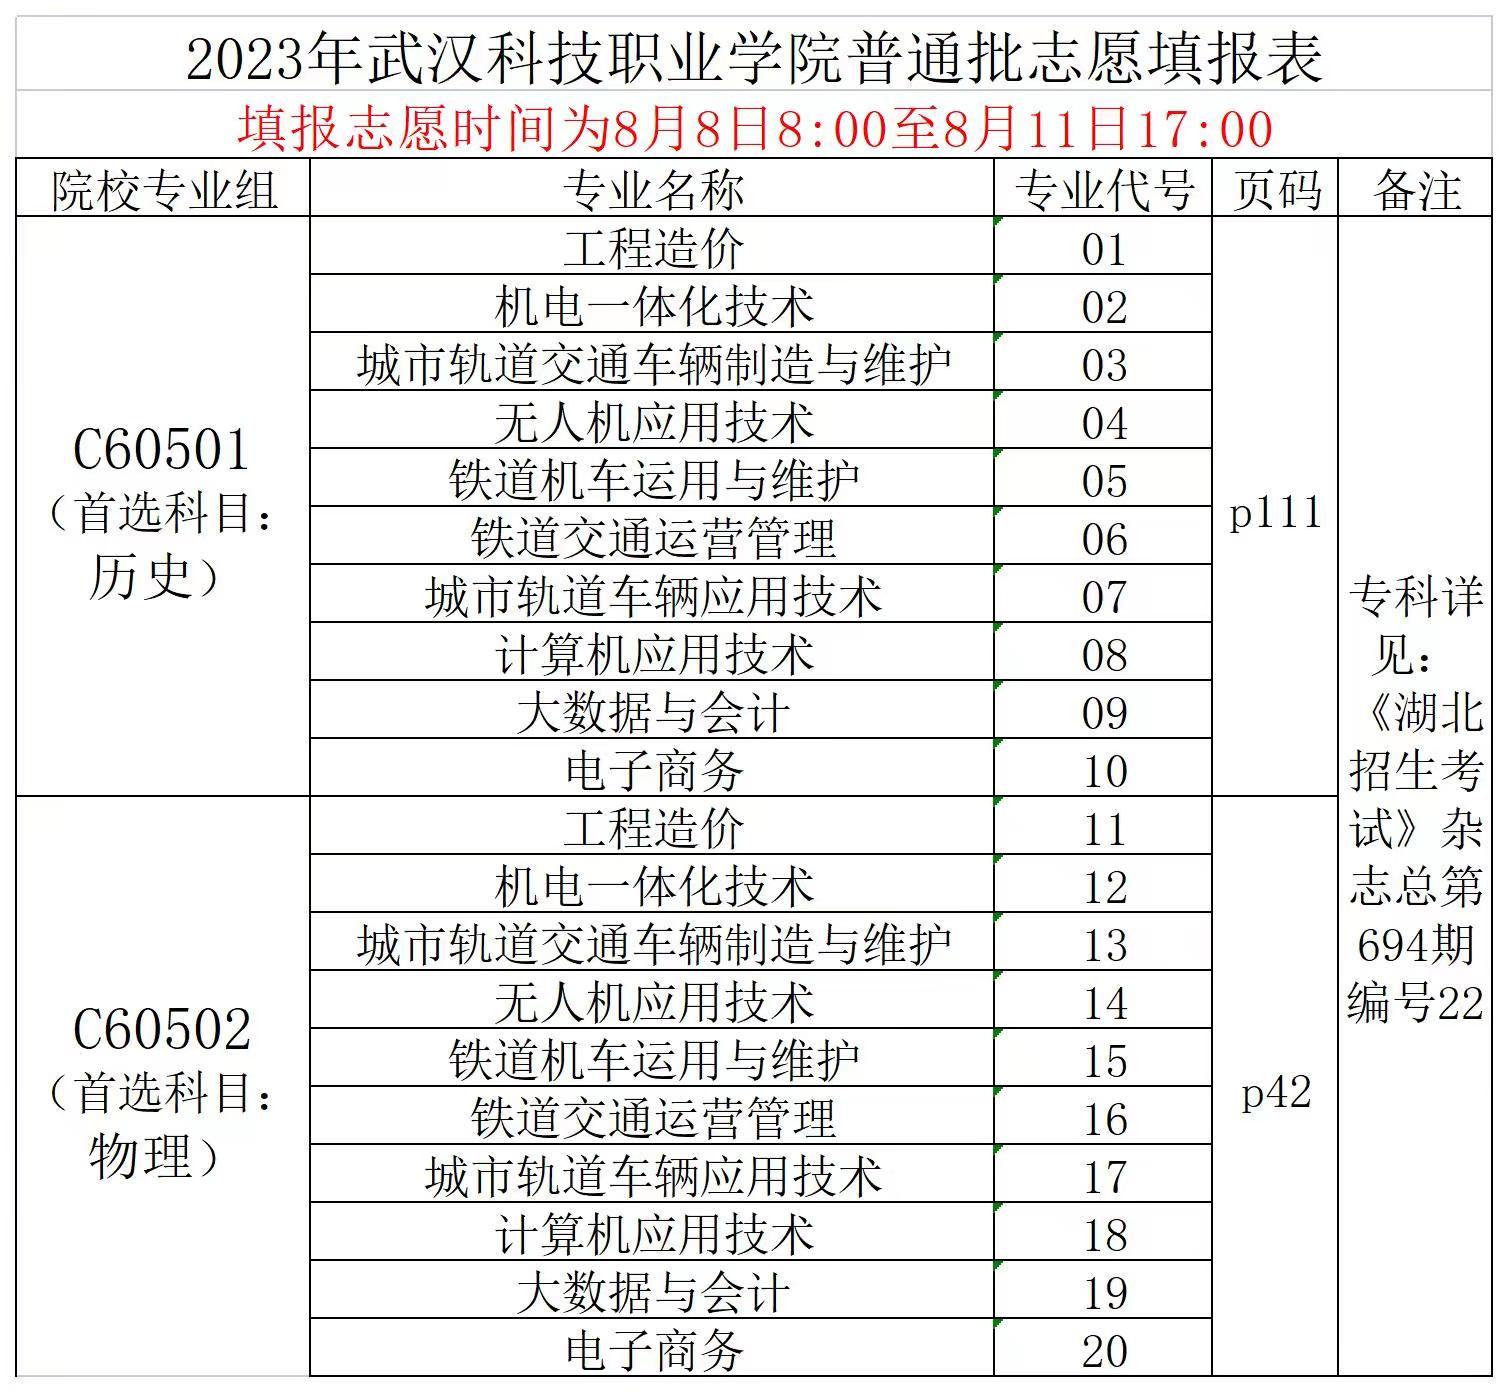 2023年武汉科技职业学院普通高考志愿填报表